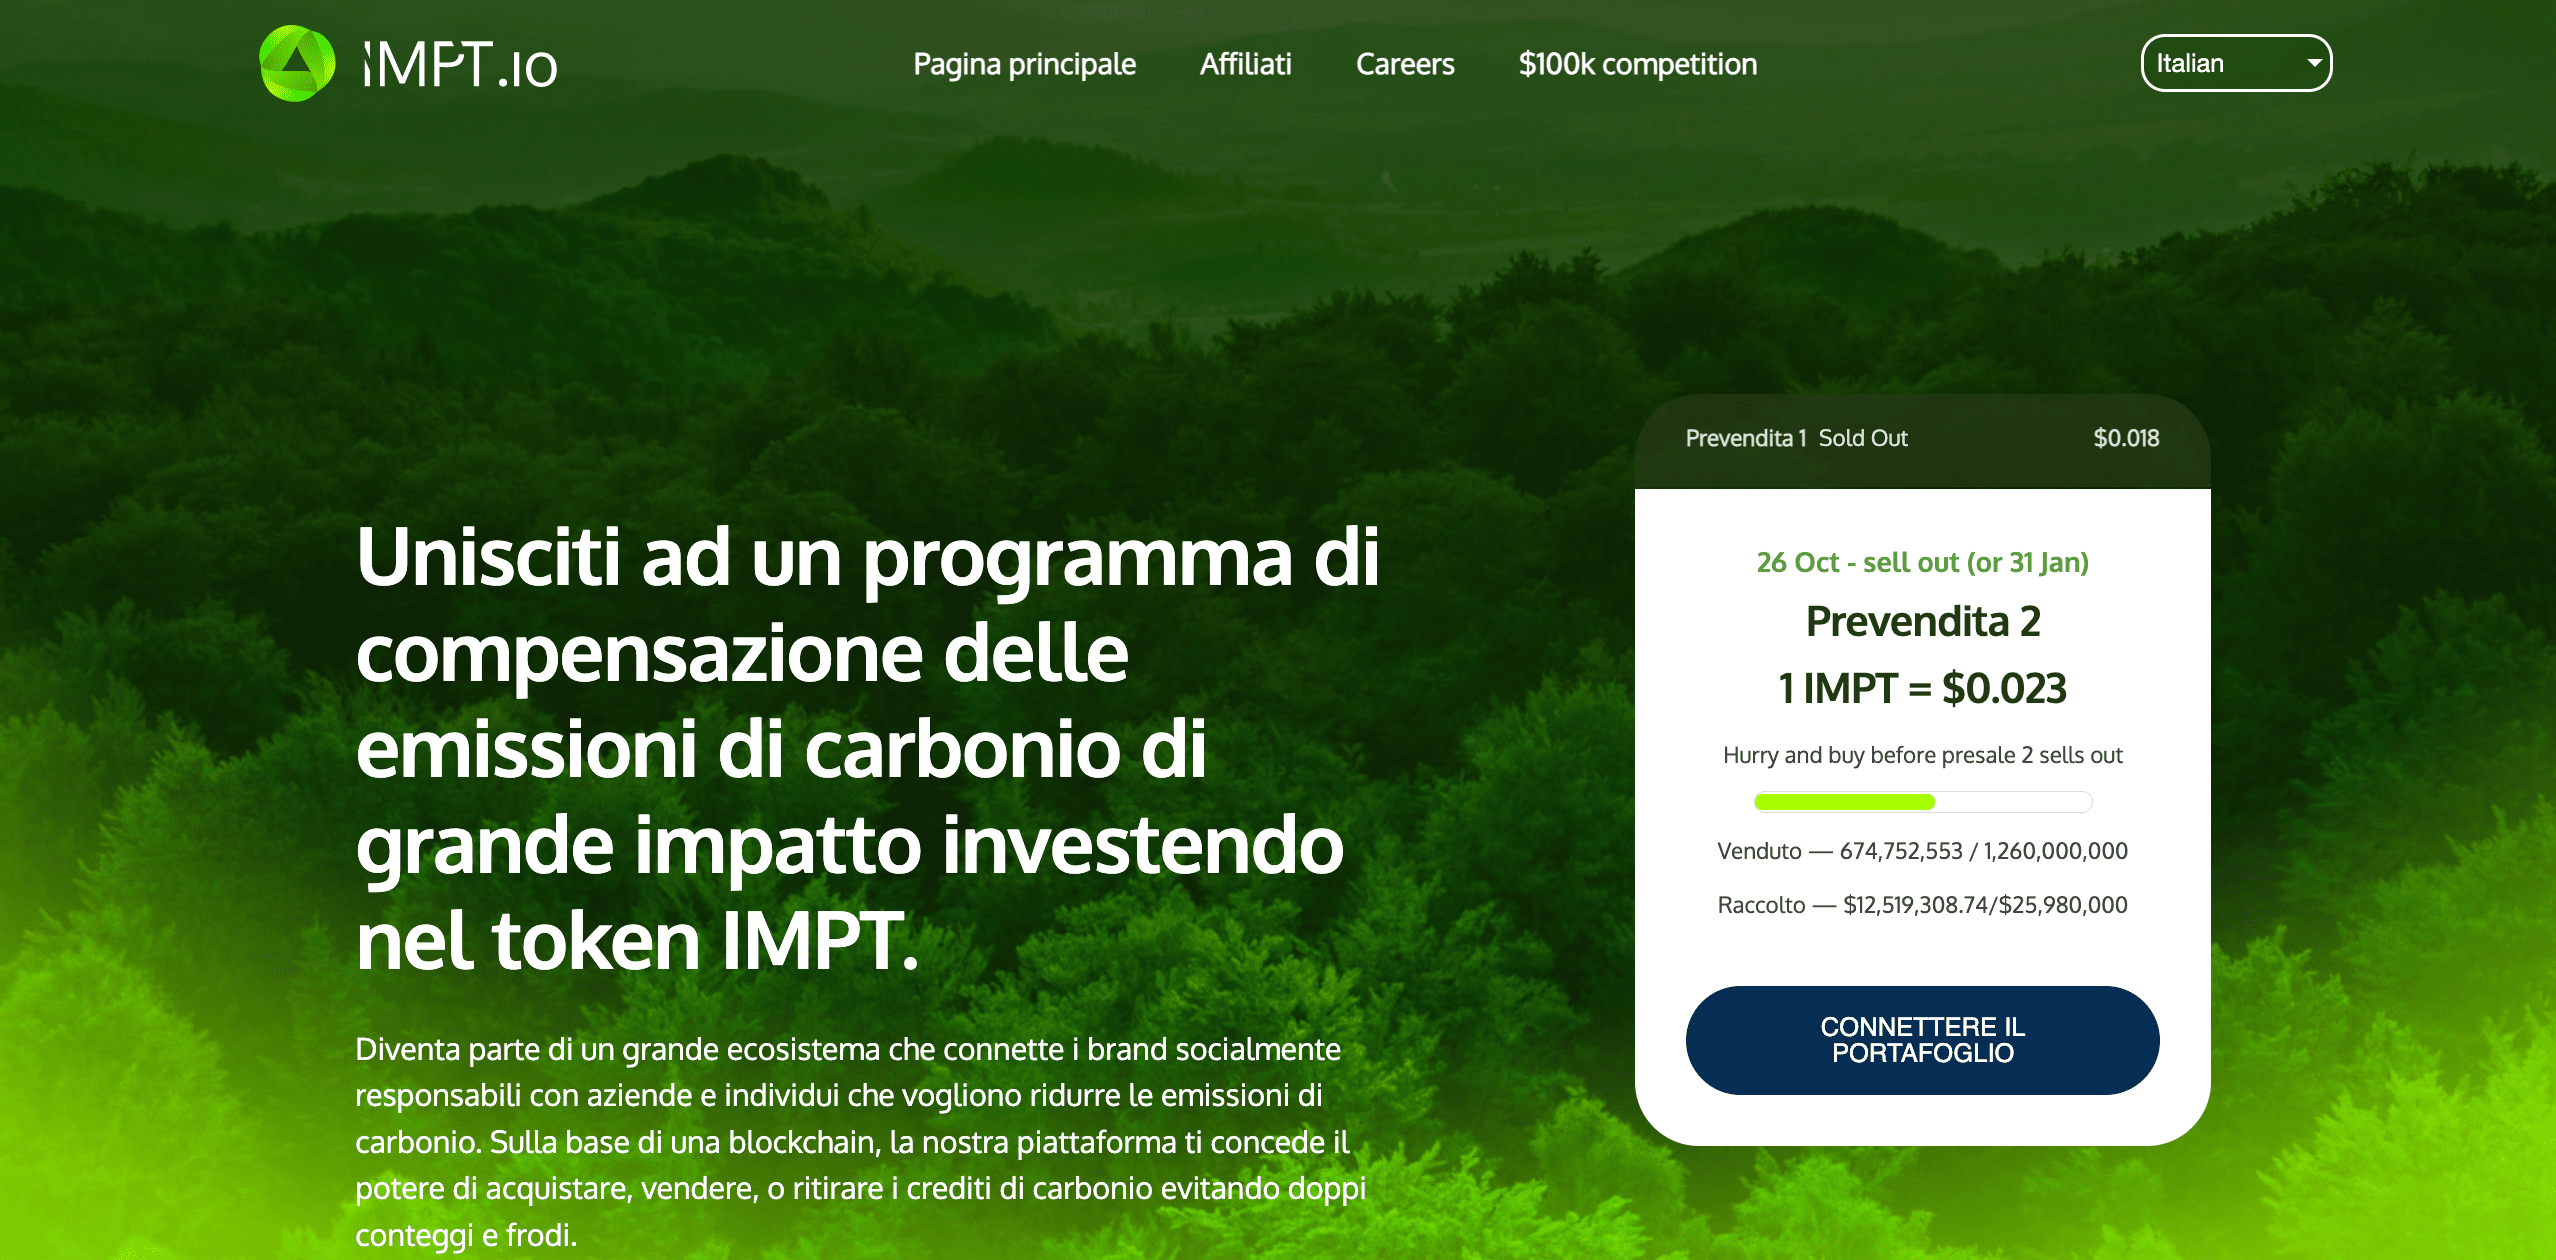 IMPT.io (IMPT) - Progetto crypto &amp;amp;amp;amp;amp;amp;amp;amp;ldquo;green&amp;amp;amp;amp;amp;amp;amp;amp;rdquo; per ridurre l'impronta di carbonio 